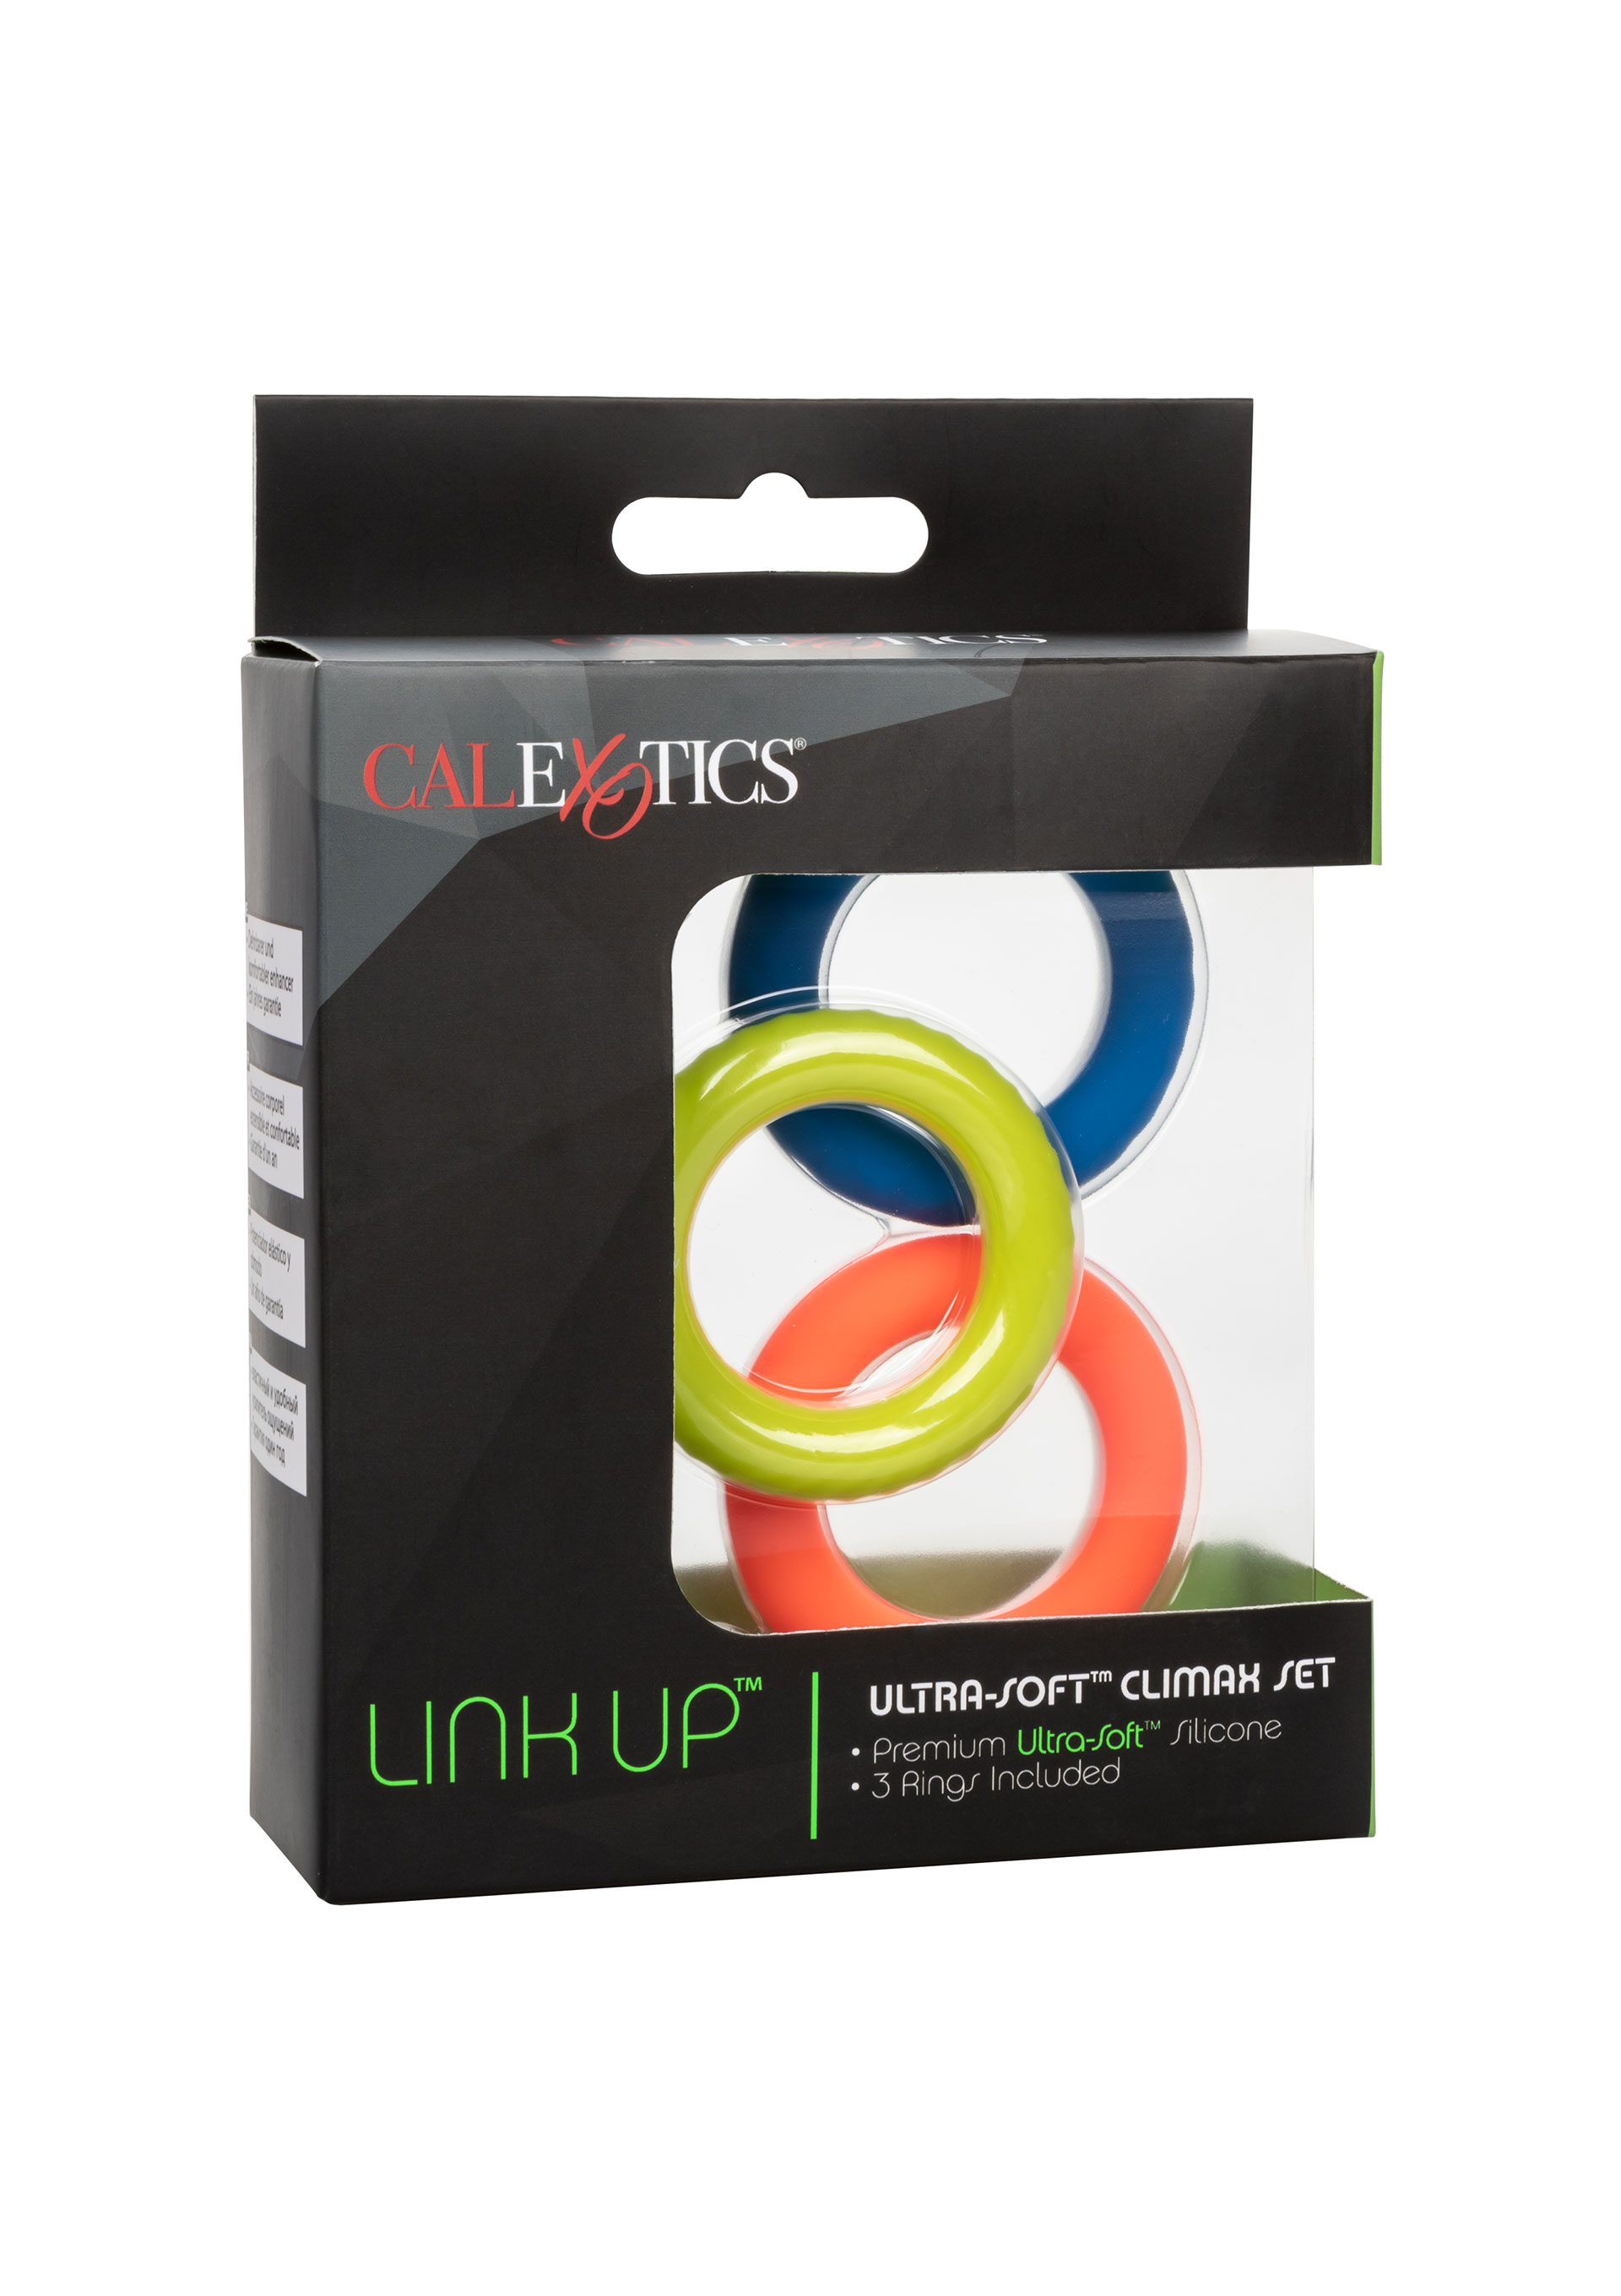 Link Up - Link Up Ultra-Soft Climax Set